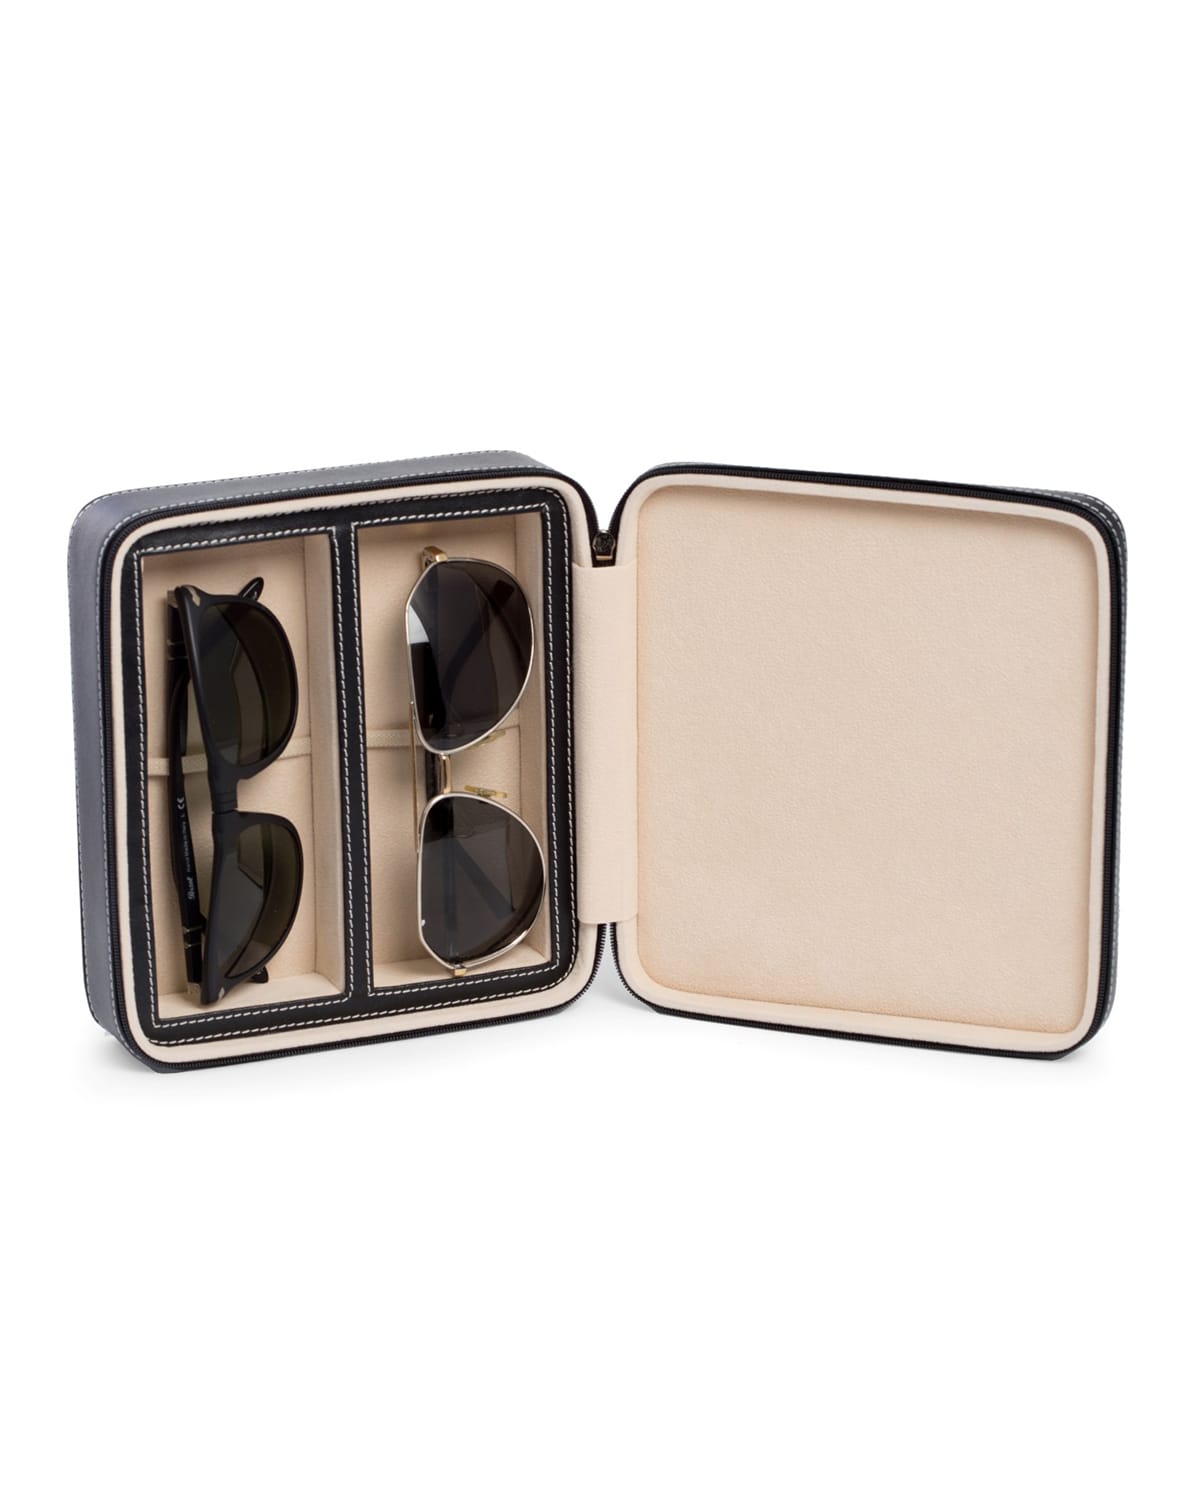 Shop Bey-berk Men's 2-watch/sunglass Leather Travel Case In Black